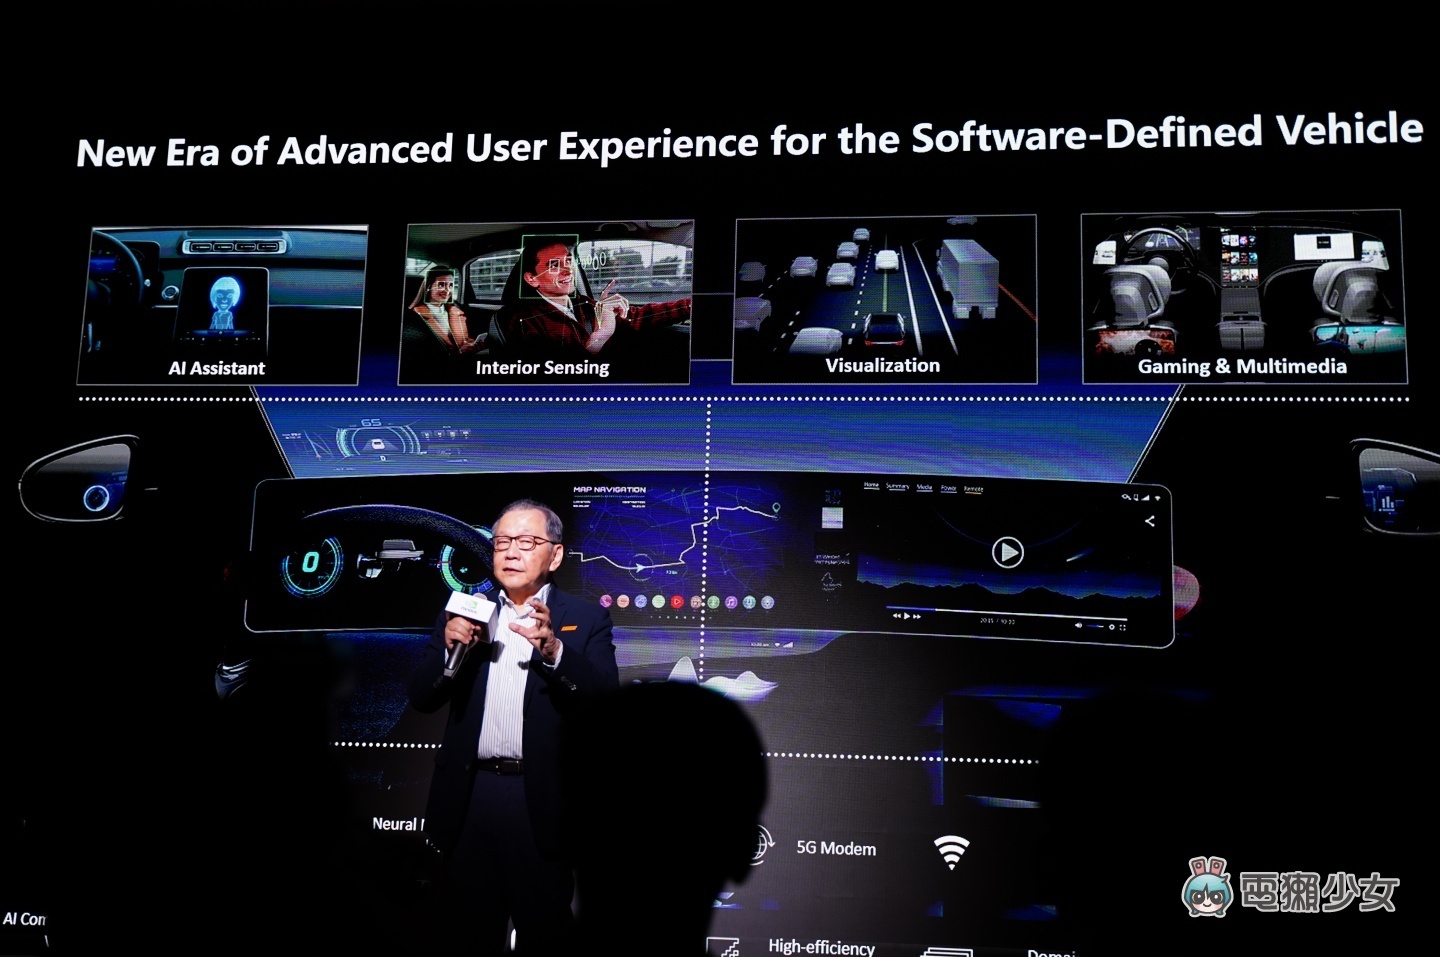 出門｜黃仁勳驚喜現身！聯發科『 Dimensity Auto 汽車平台 』將整合 NVIDIA GPU 小晶片